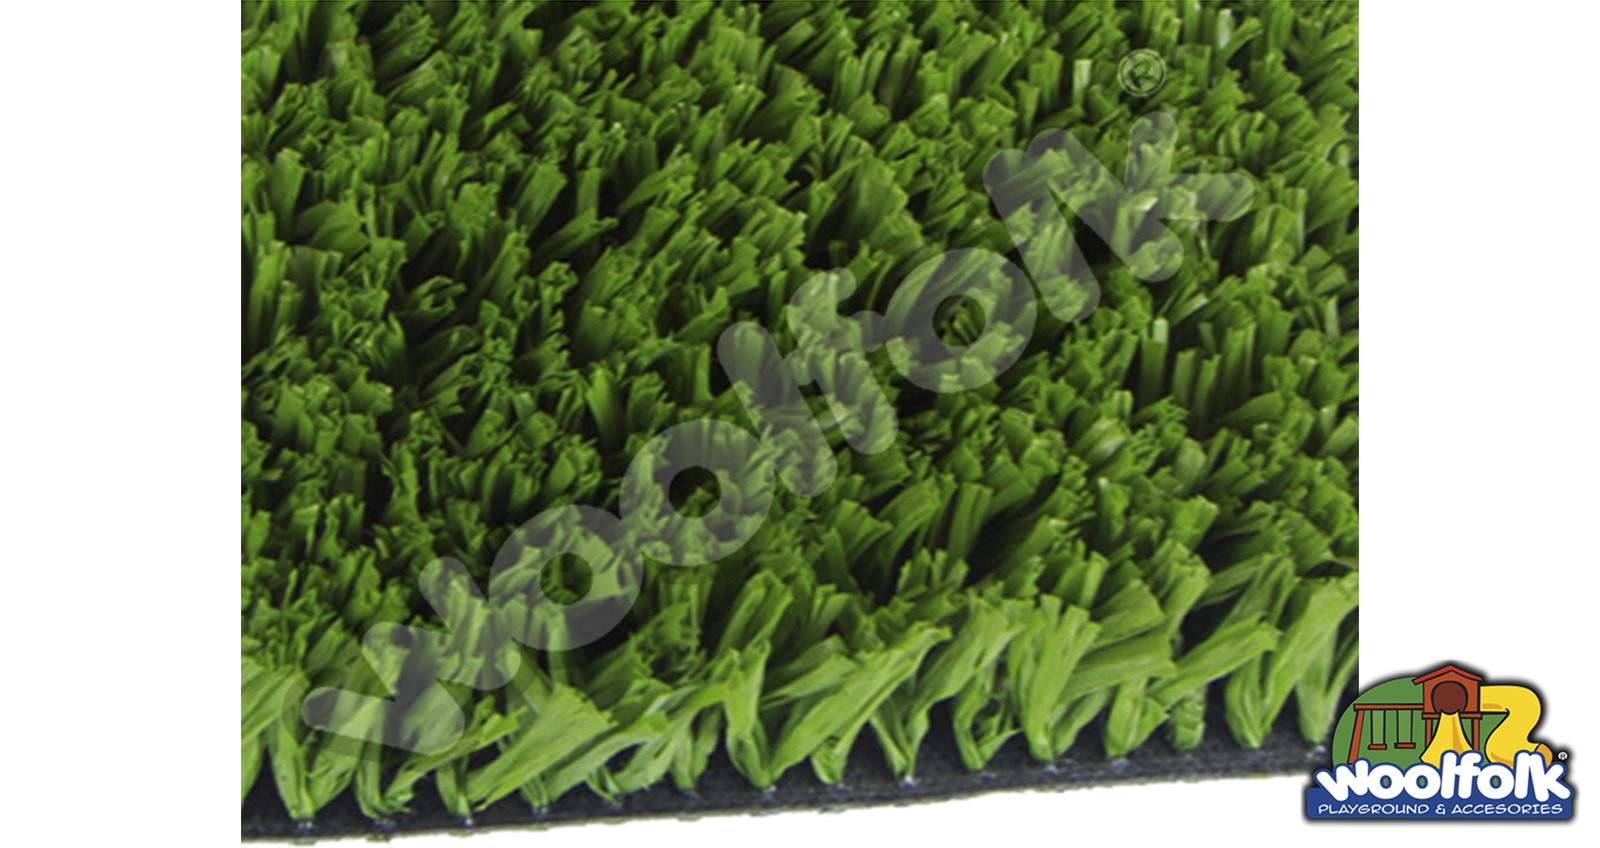 Pasto Artificial Deportivo woolfolk
Cubierta inferior (Backing): Poliuretano distribuido uniformemente entre las cerdas. Modelo: gra001-pasto-artificial-deportivo